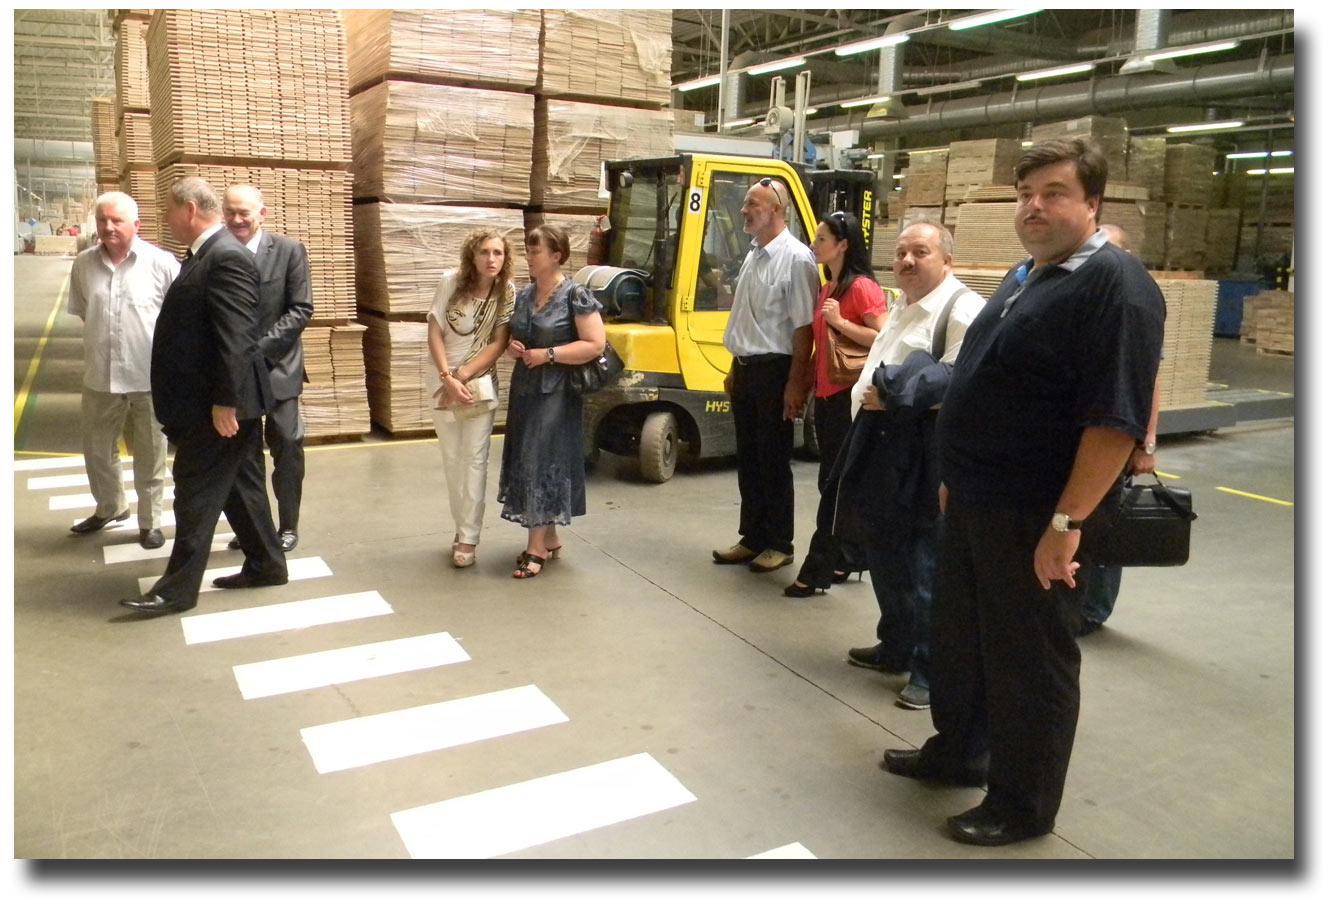 Wizytacja zakładu produkcji deski podłogowej Barlinek. Zdjęcie pobrano z www.winnica.msz.gov.pl